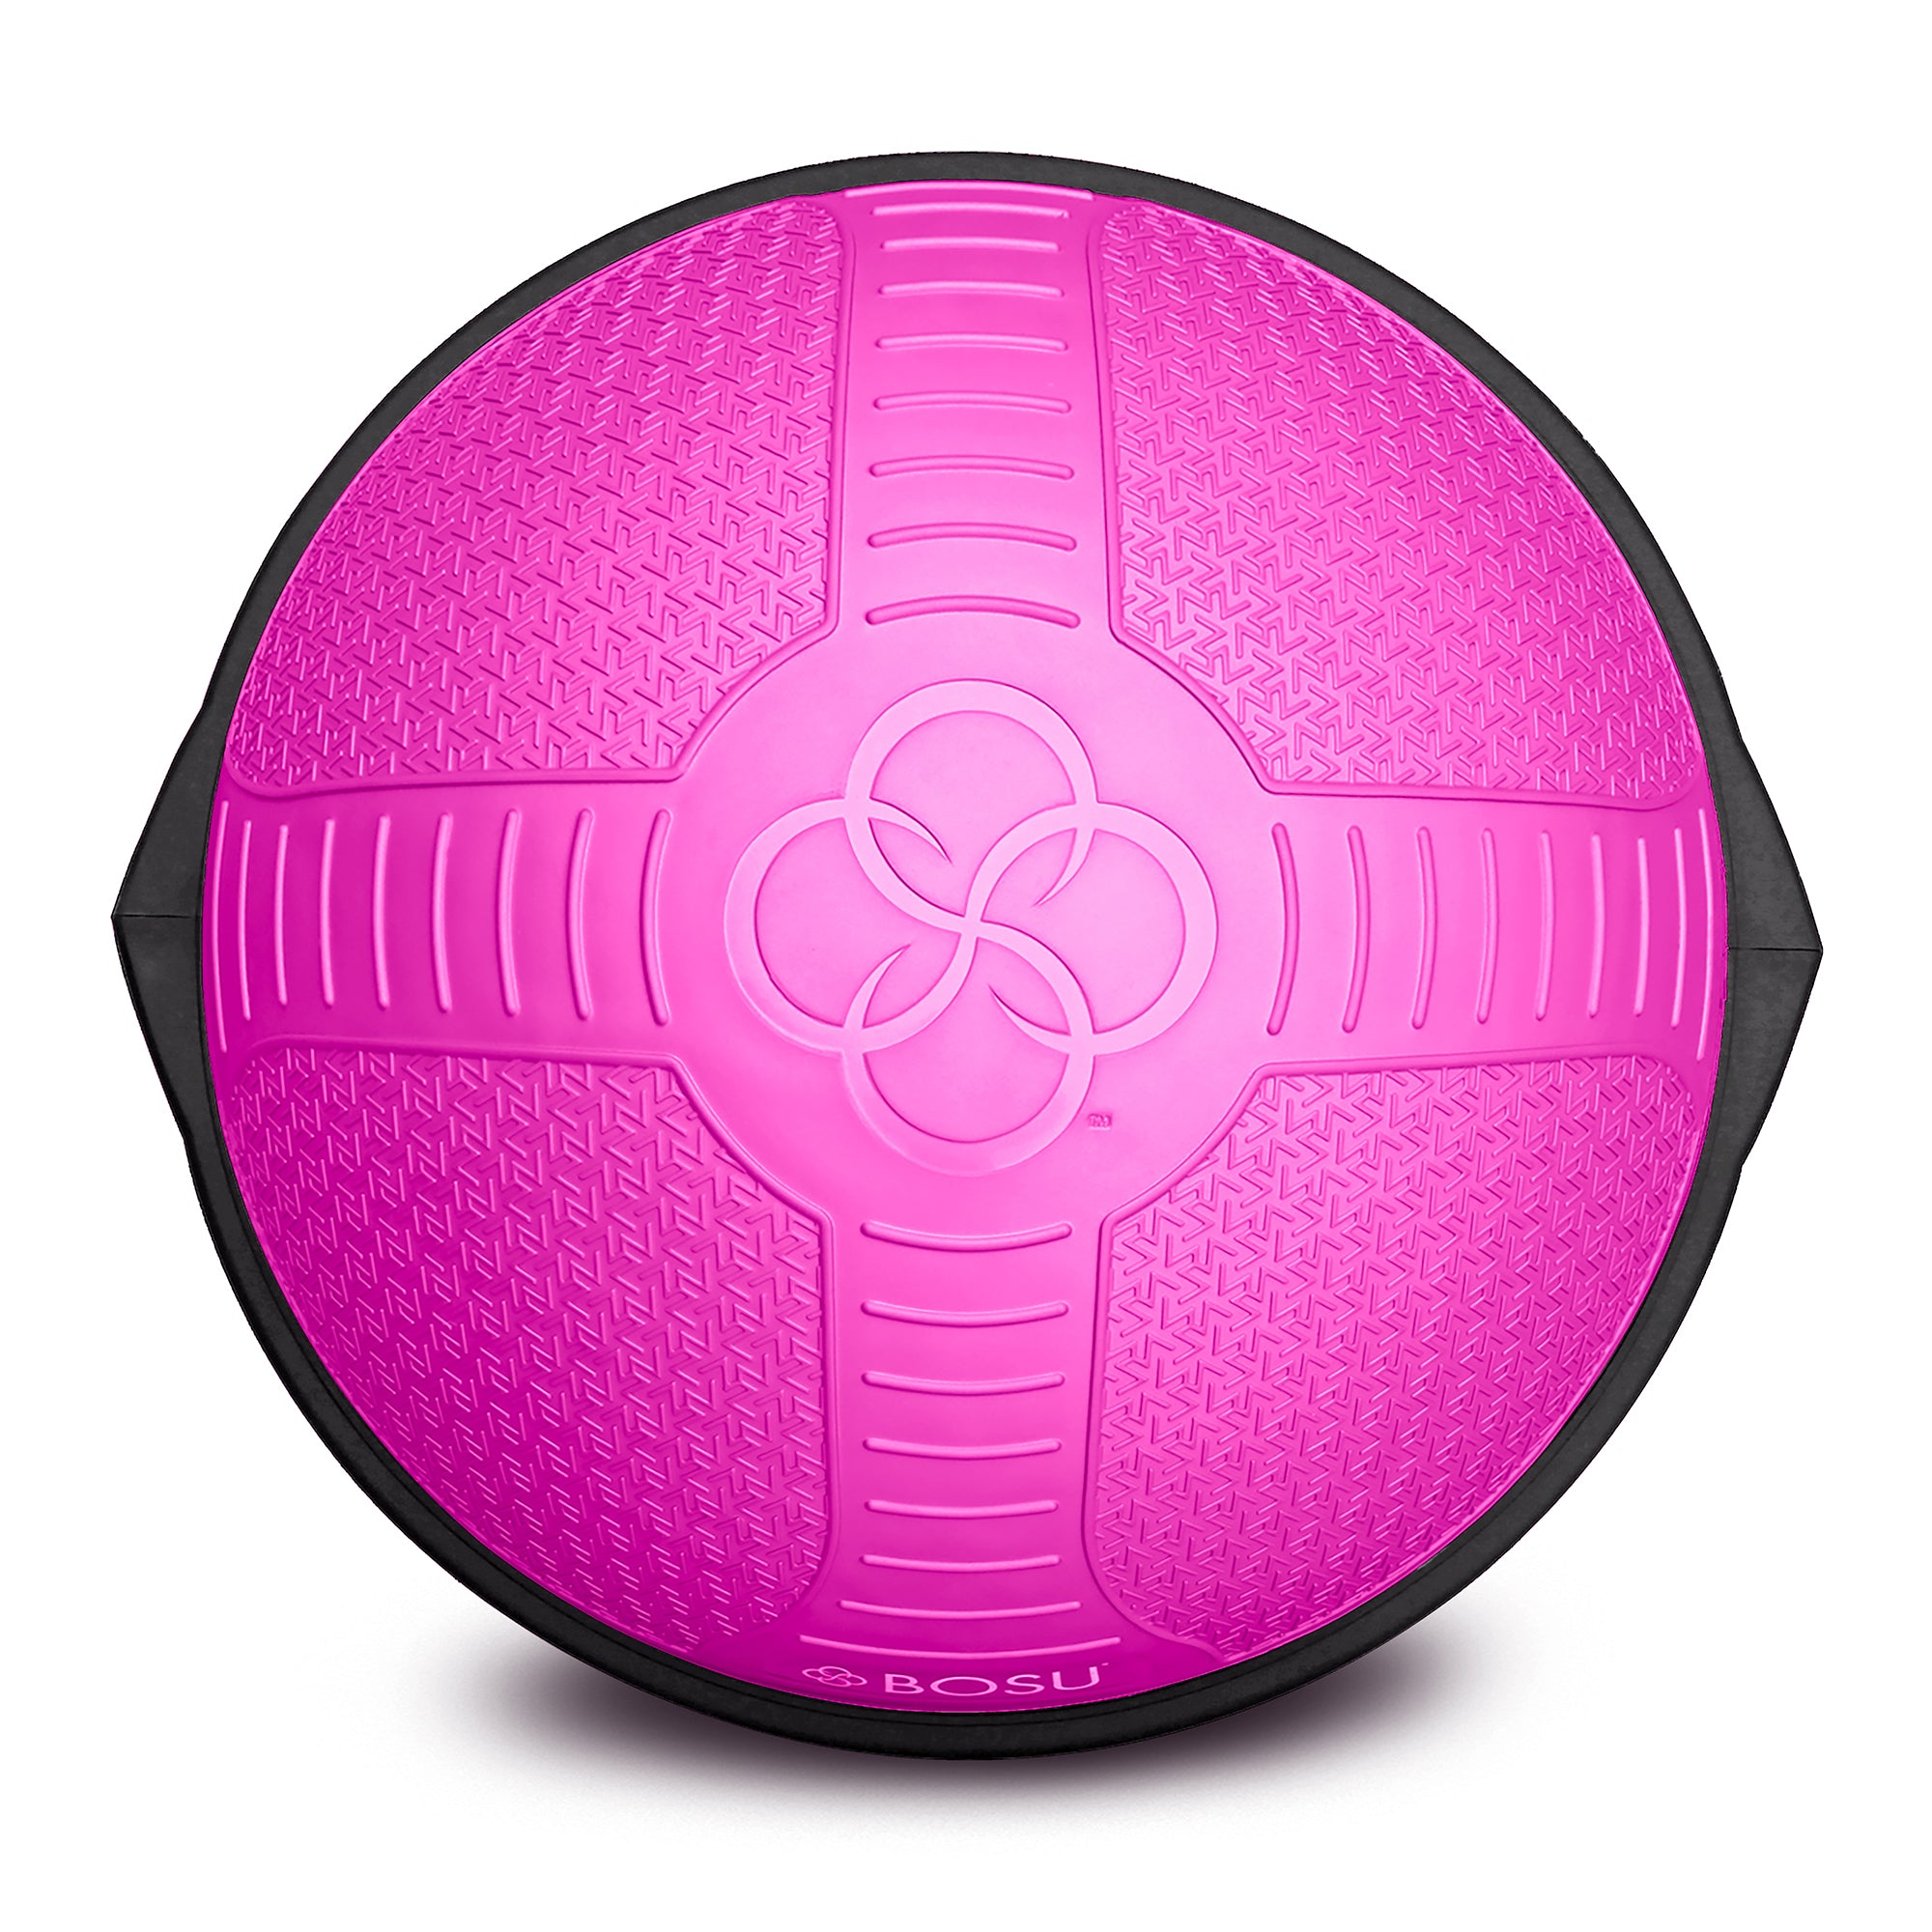 Limited Edition Pink BOSU® NexGen™ Home Balance Trainer